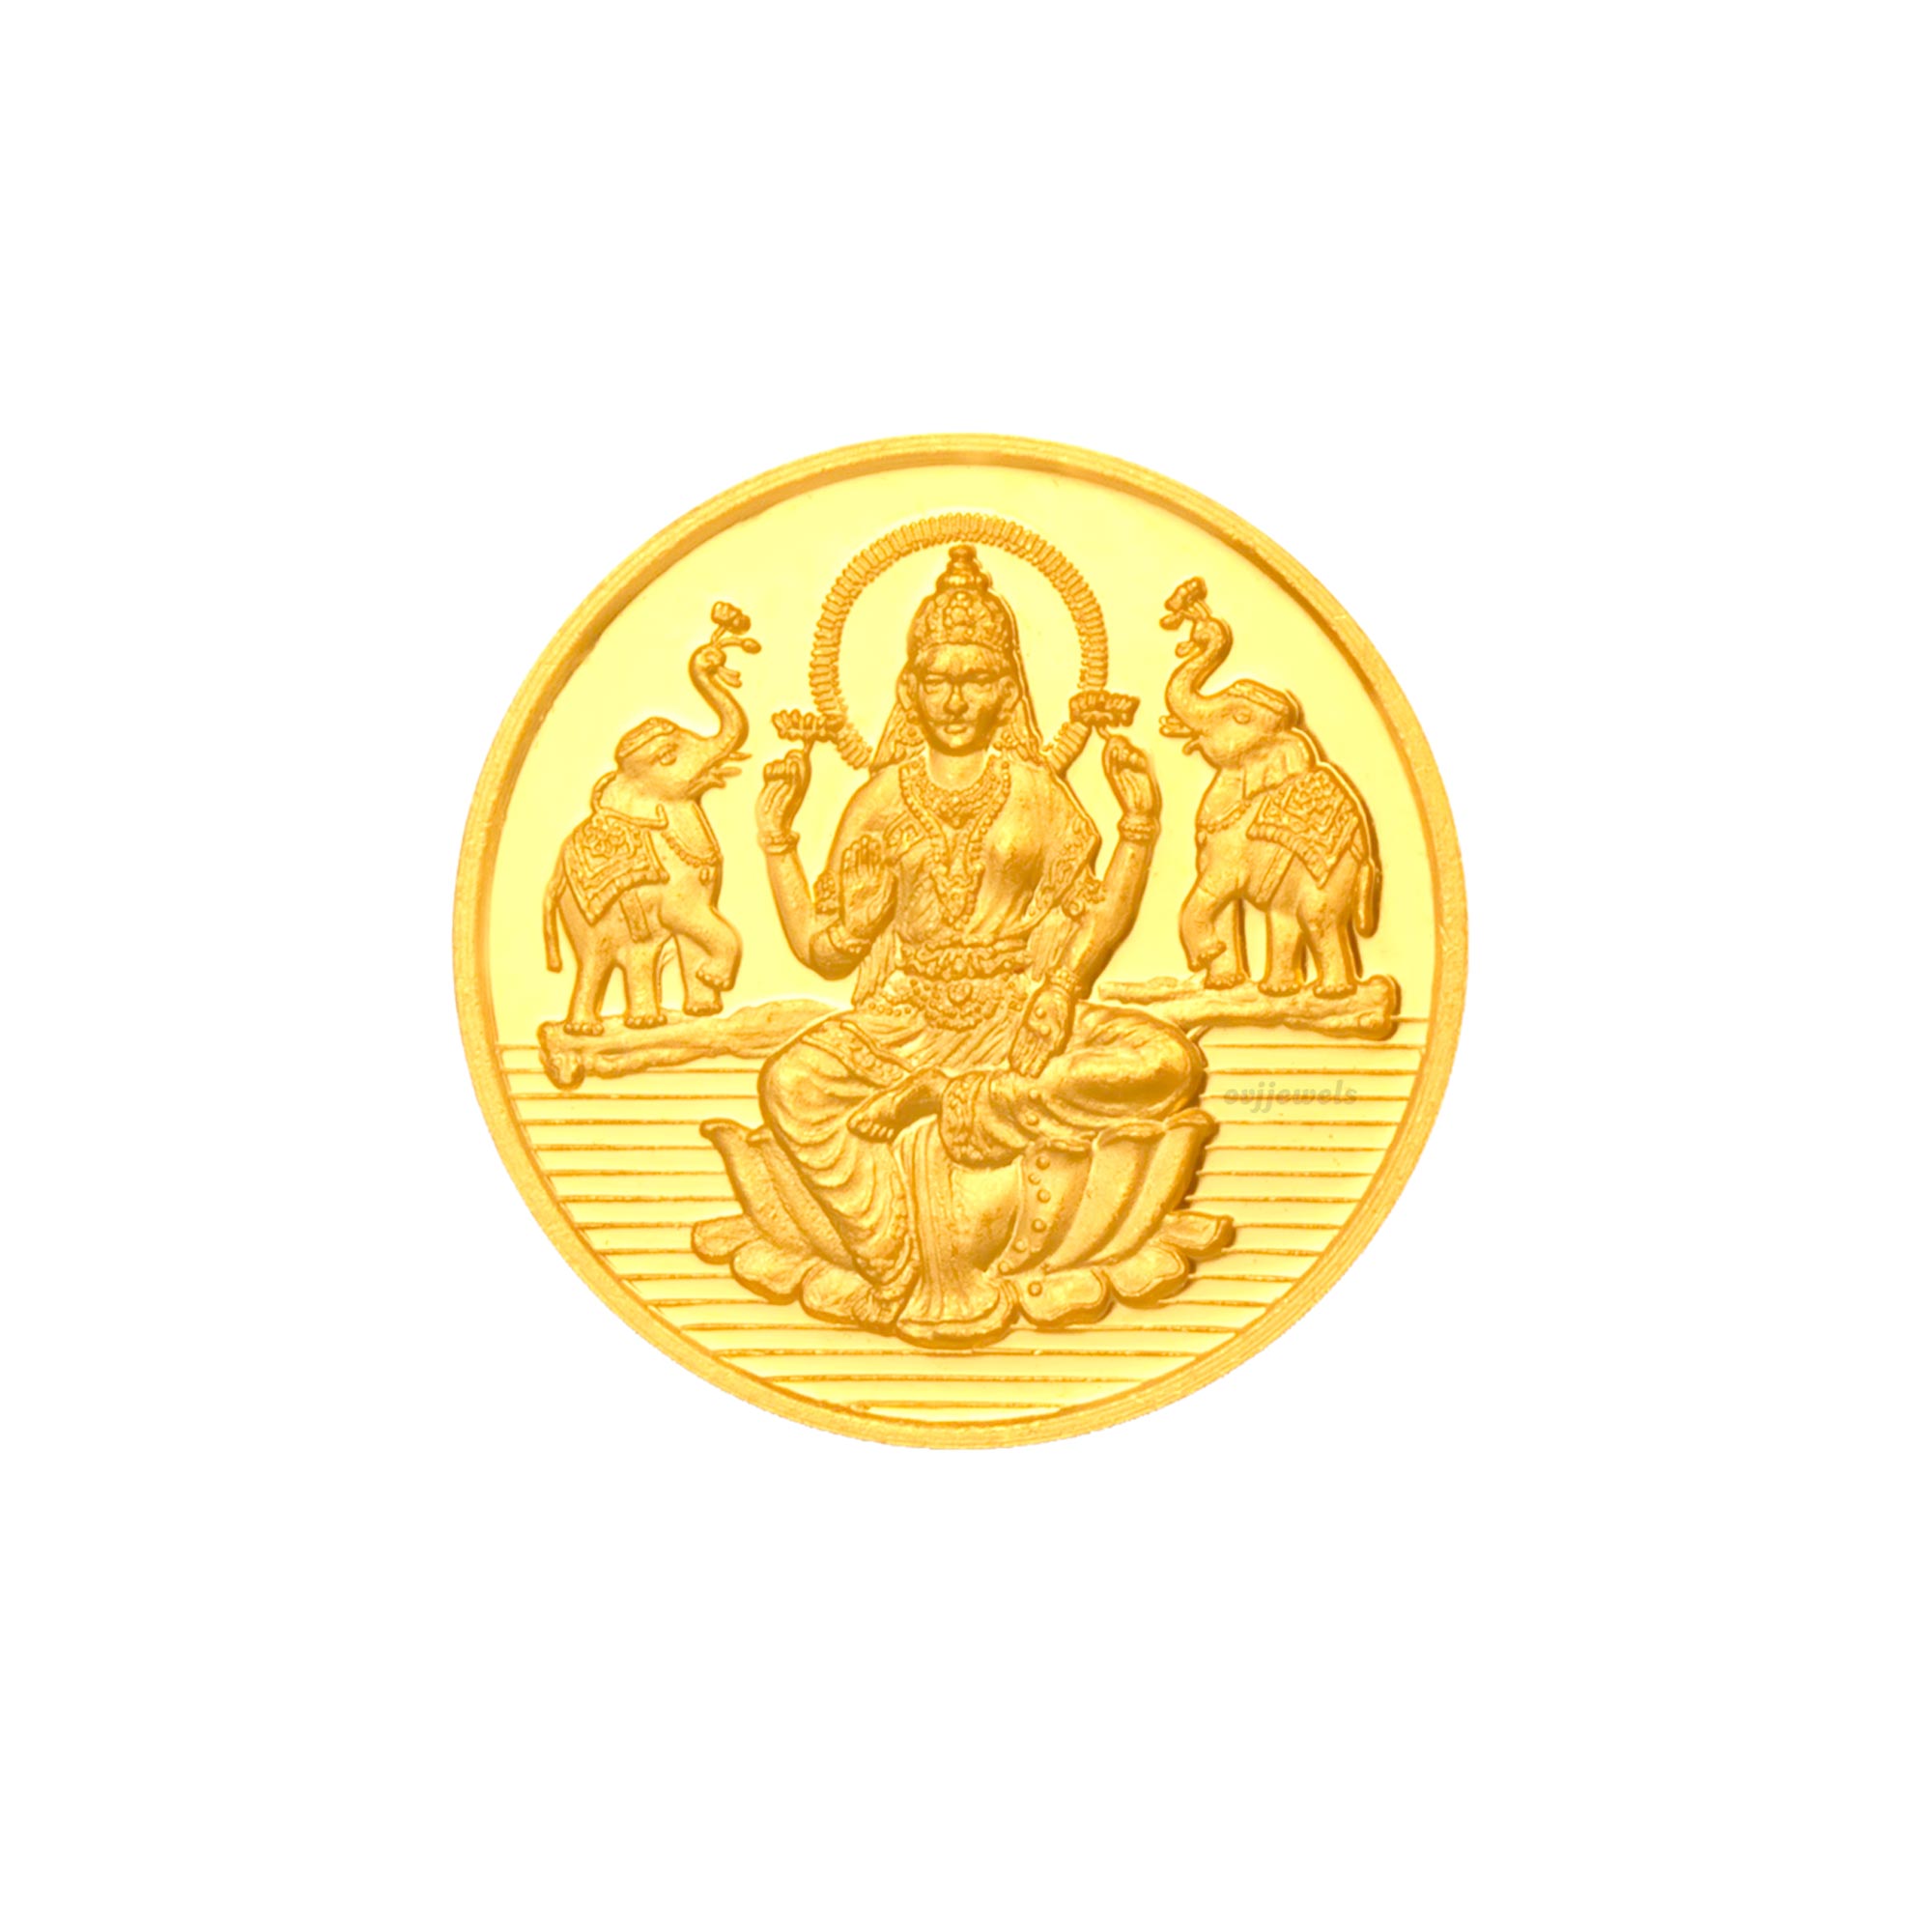 2 gram gold coin